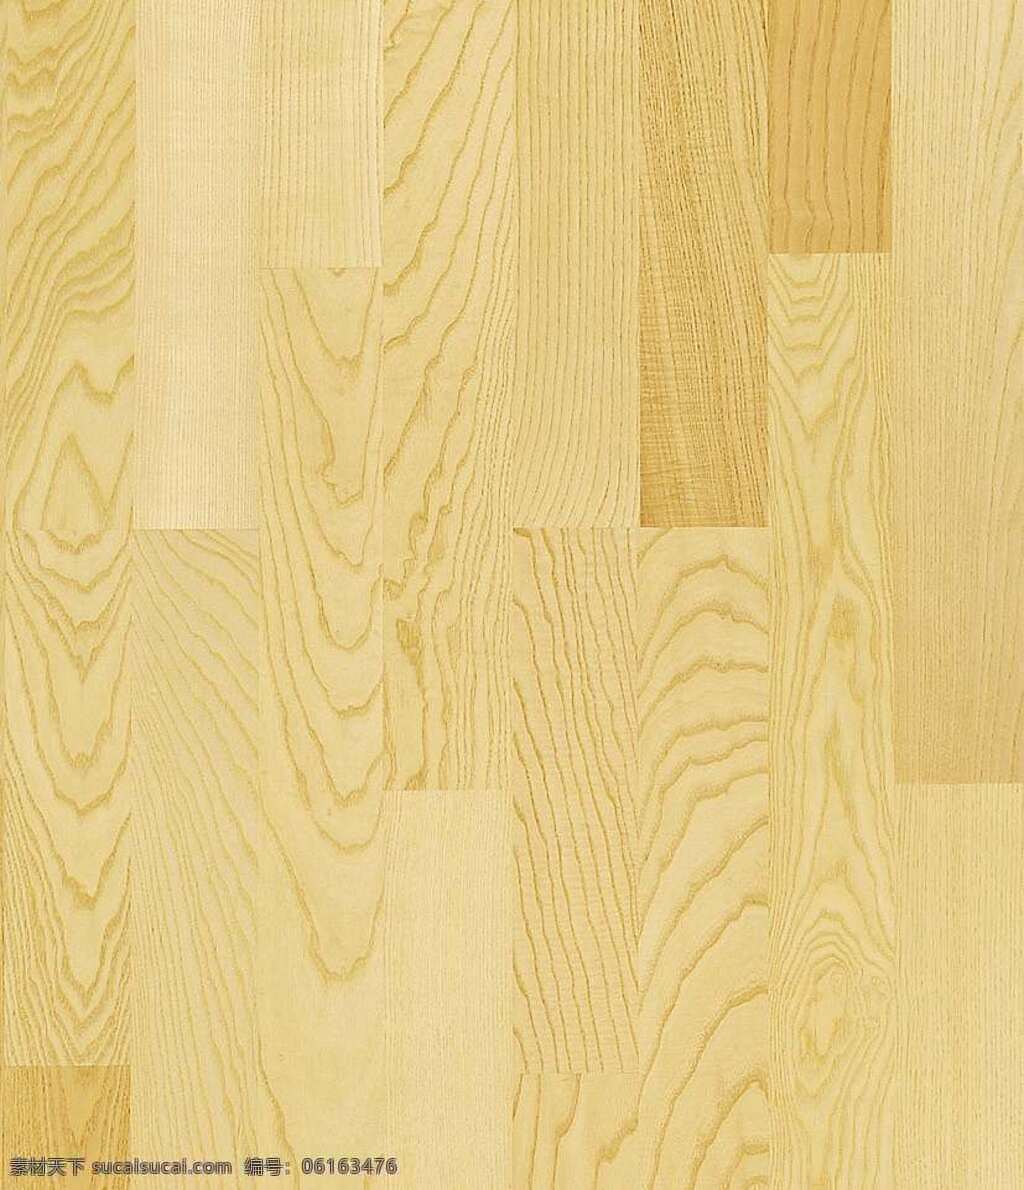 木地板 贴图 木材 地板贴图 木地板贴图 木地板效果图 木地板材质 地板设计素材